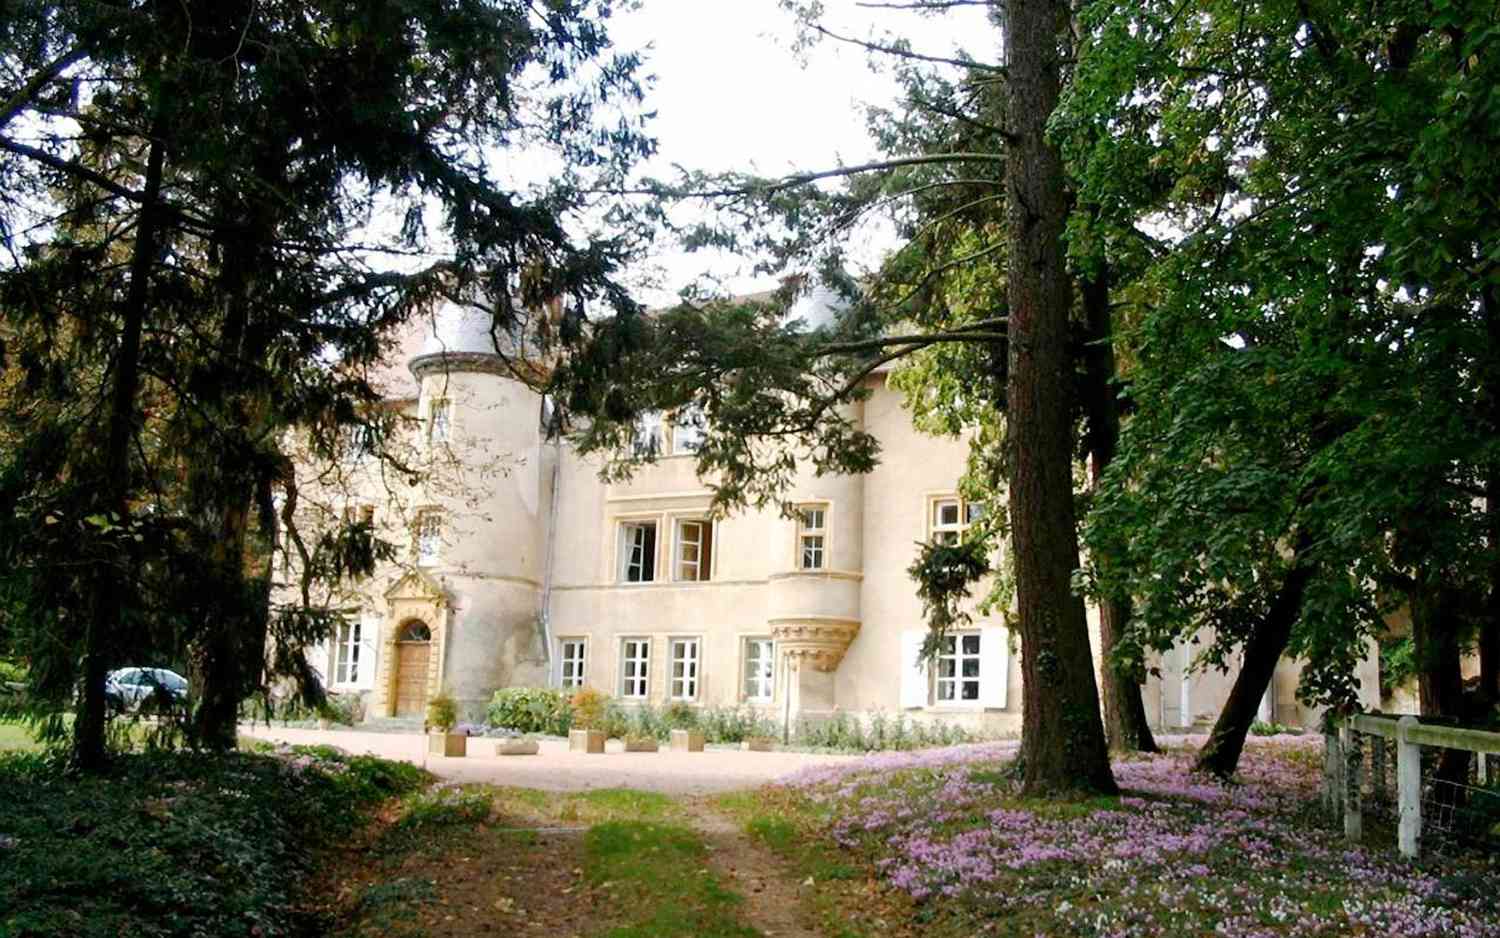 Louer un château en France sur Airbnb